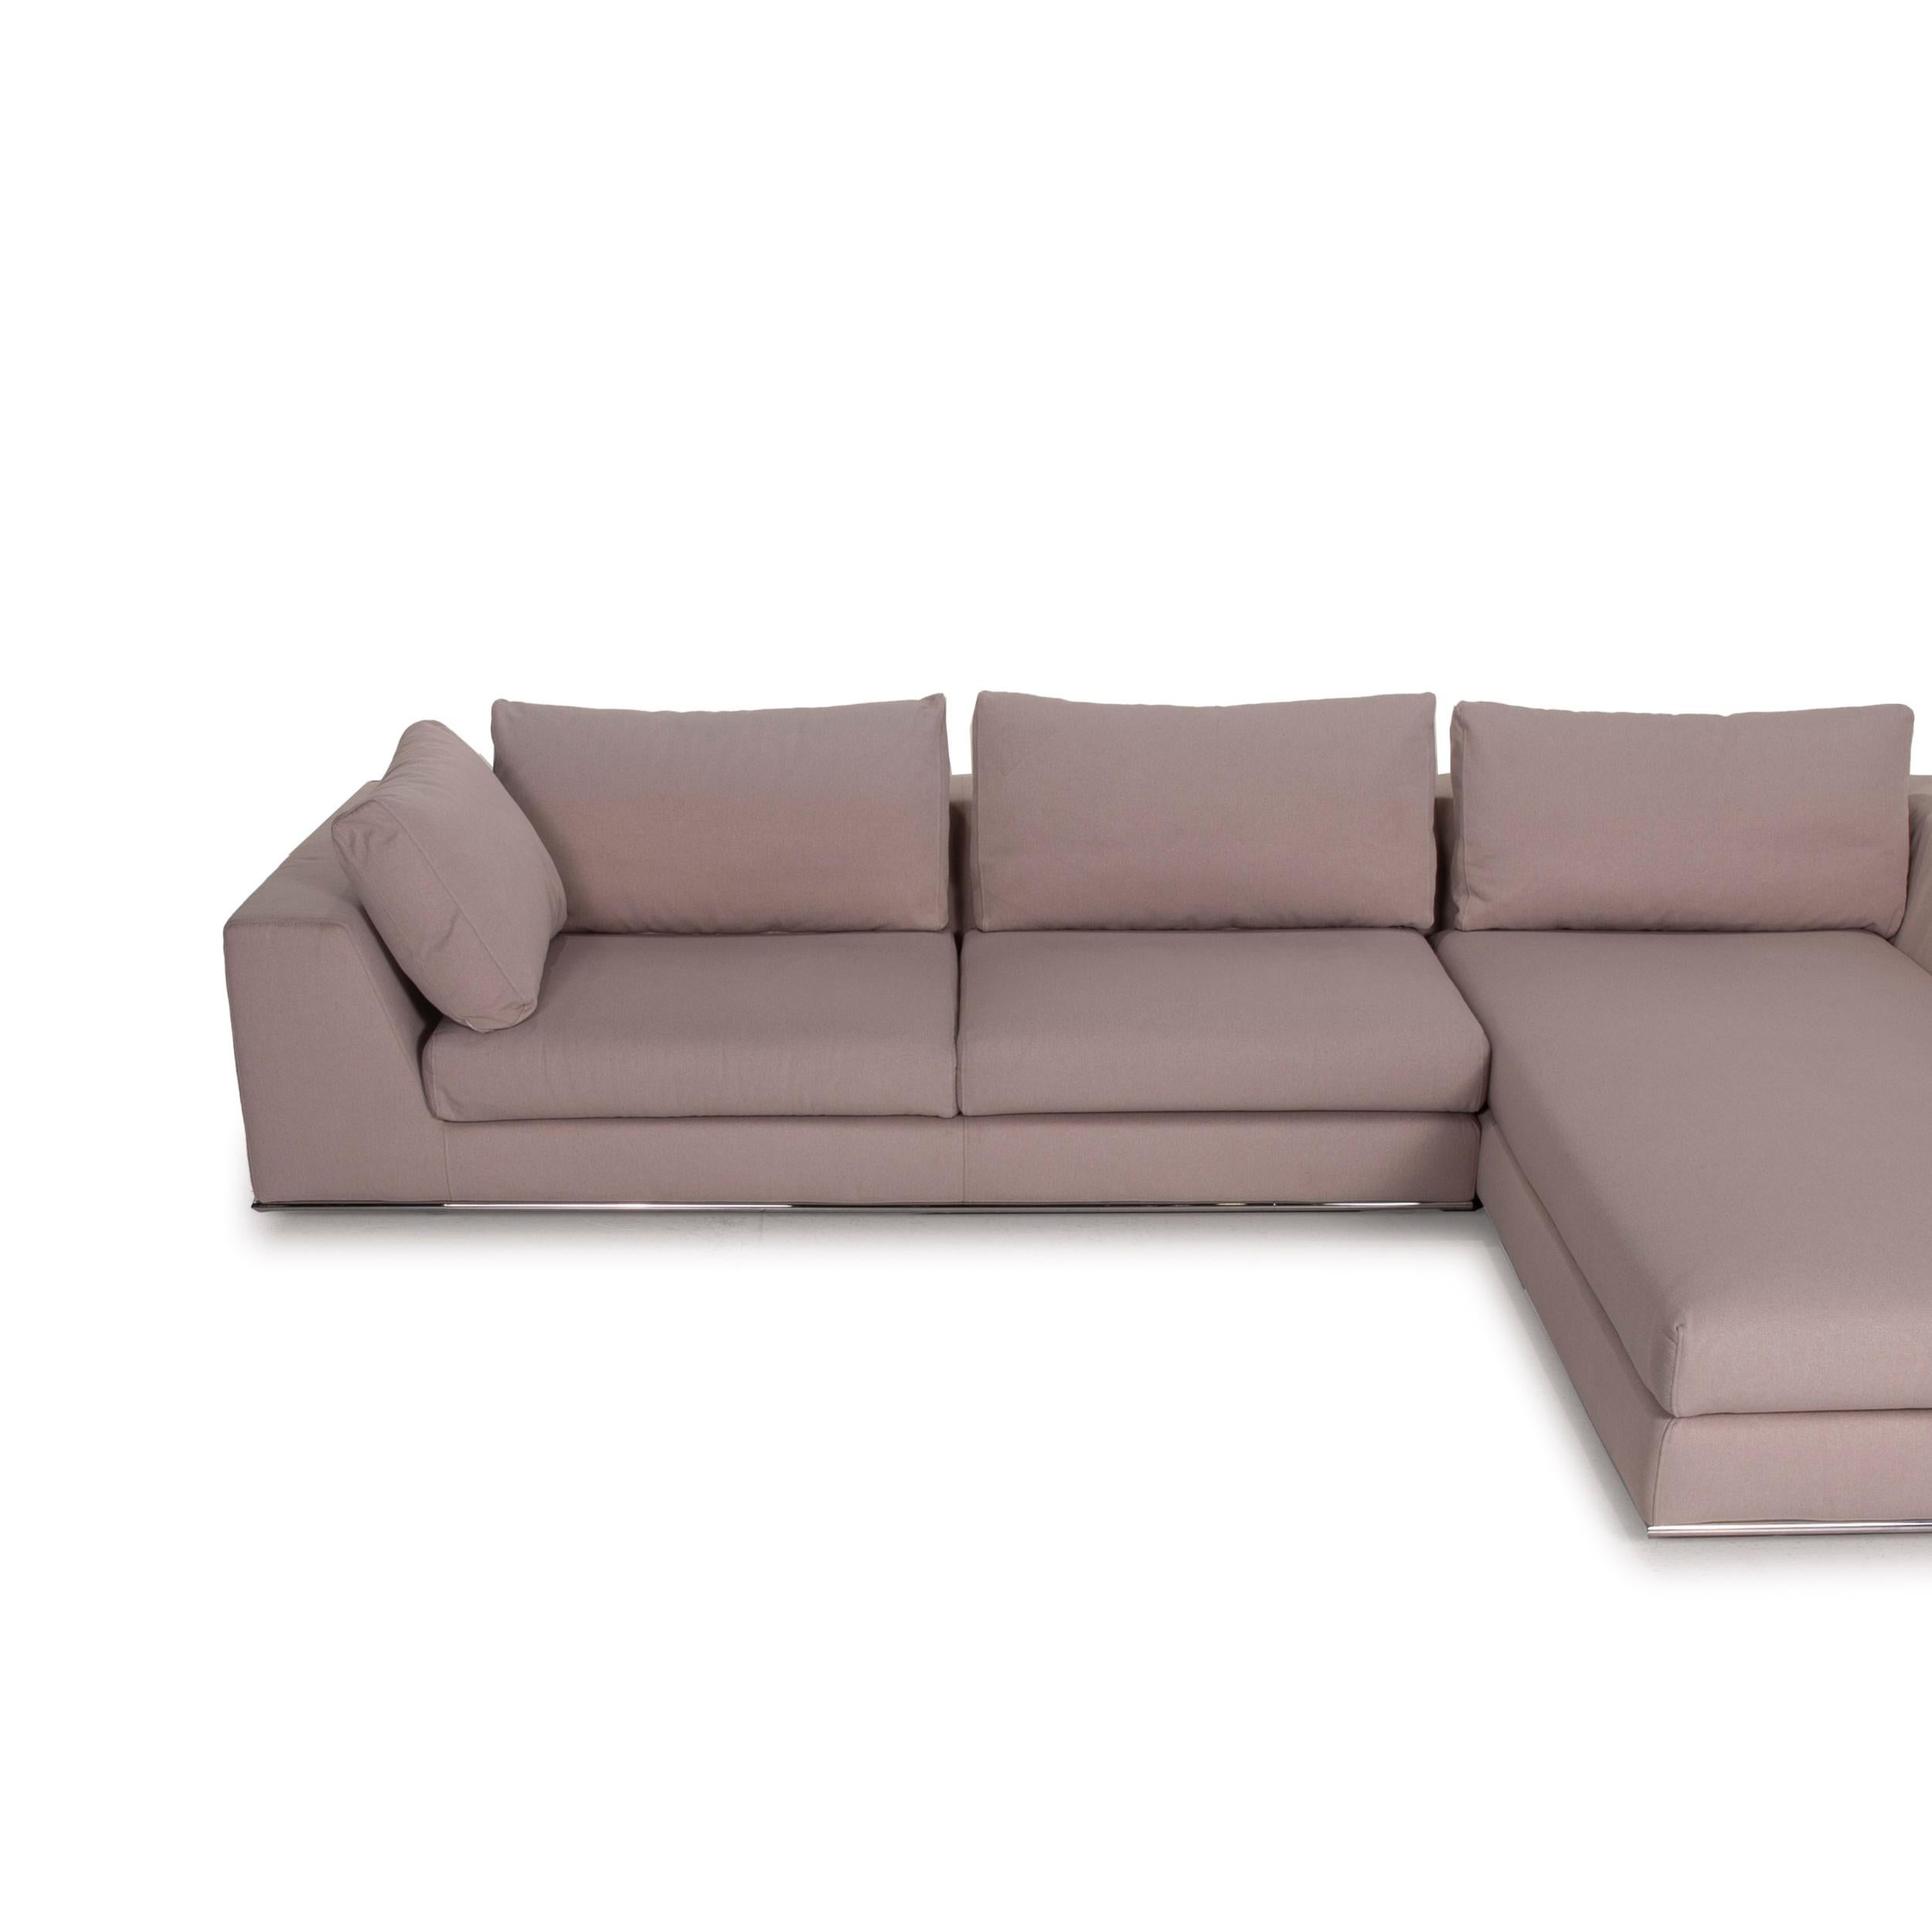 Who's Perfect La Nuova Casa Liverpool Fabric Sofa Beige 1